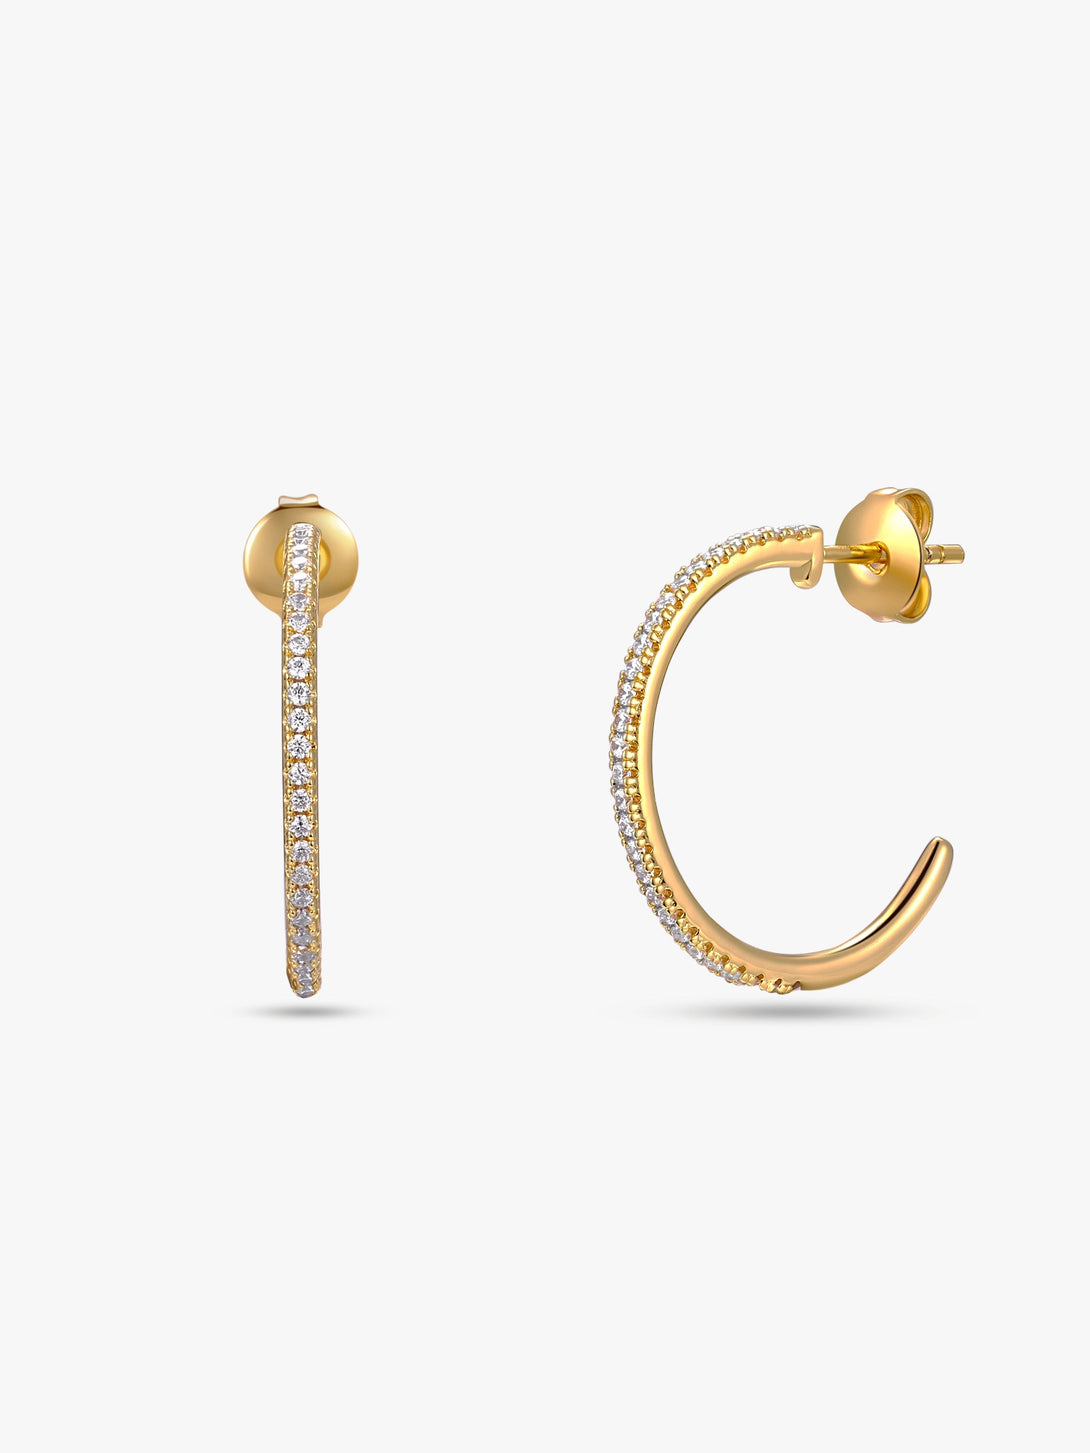 Delicate Semicircle Hoop Earrings - OOTDY